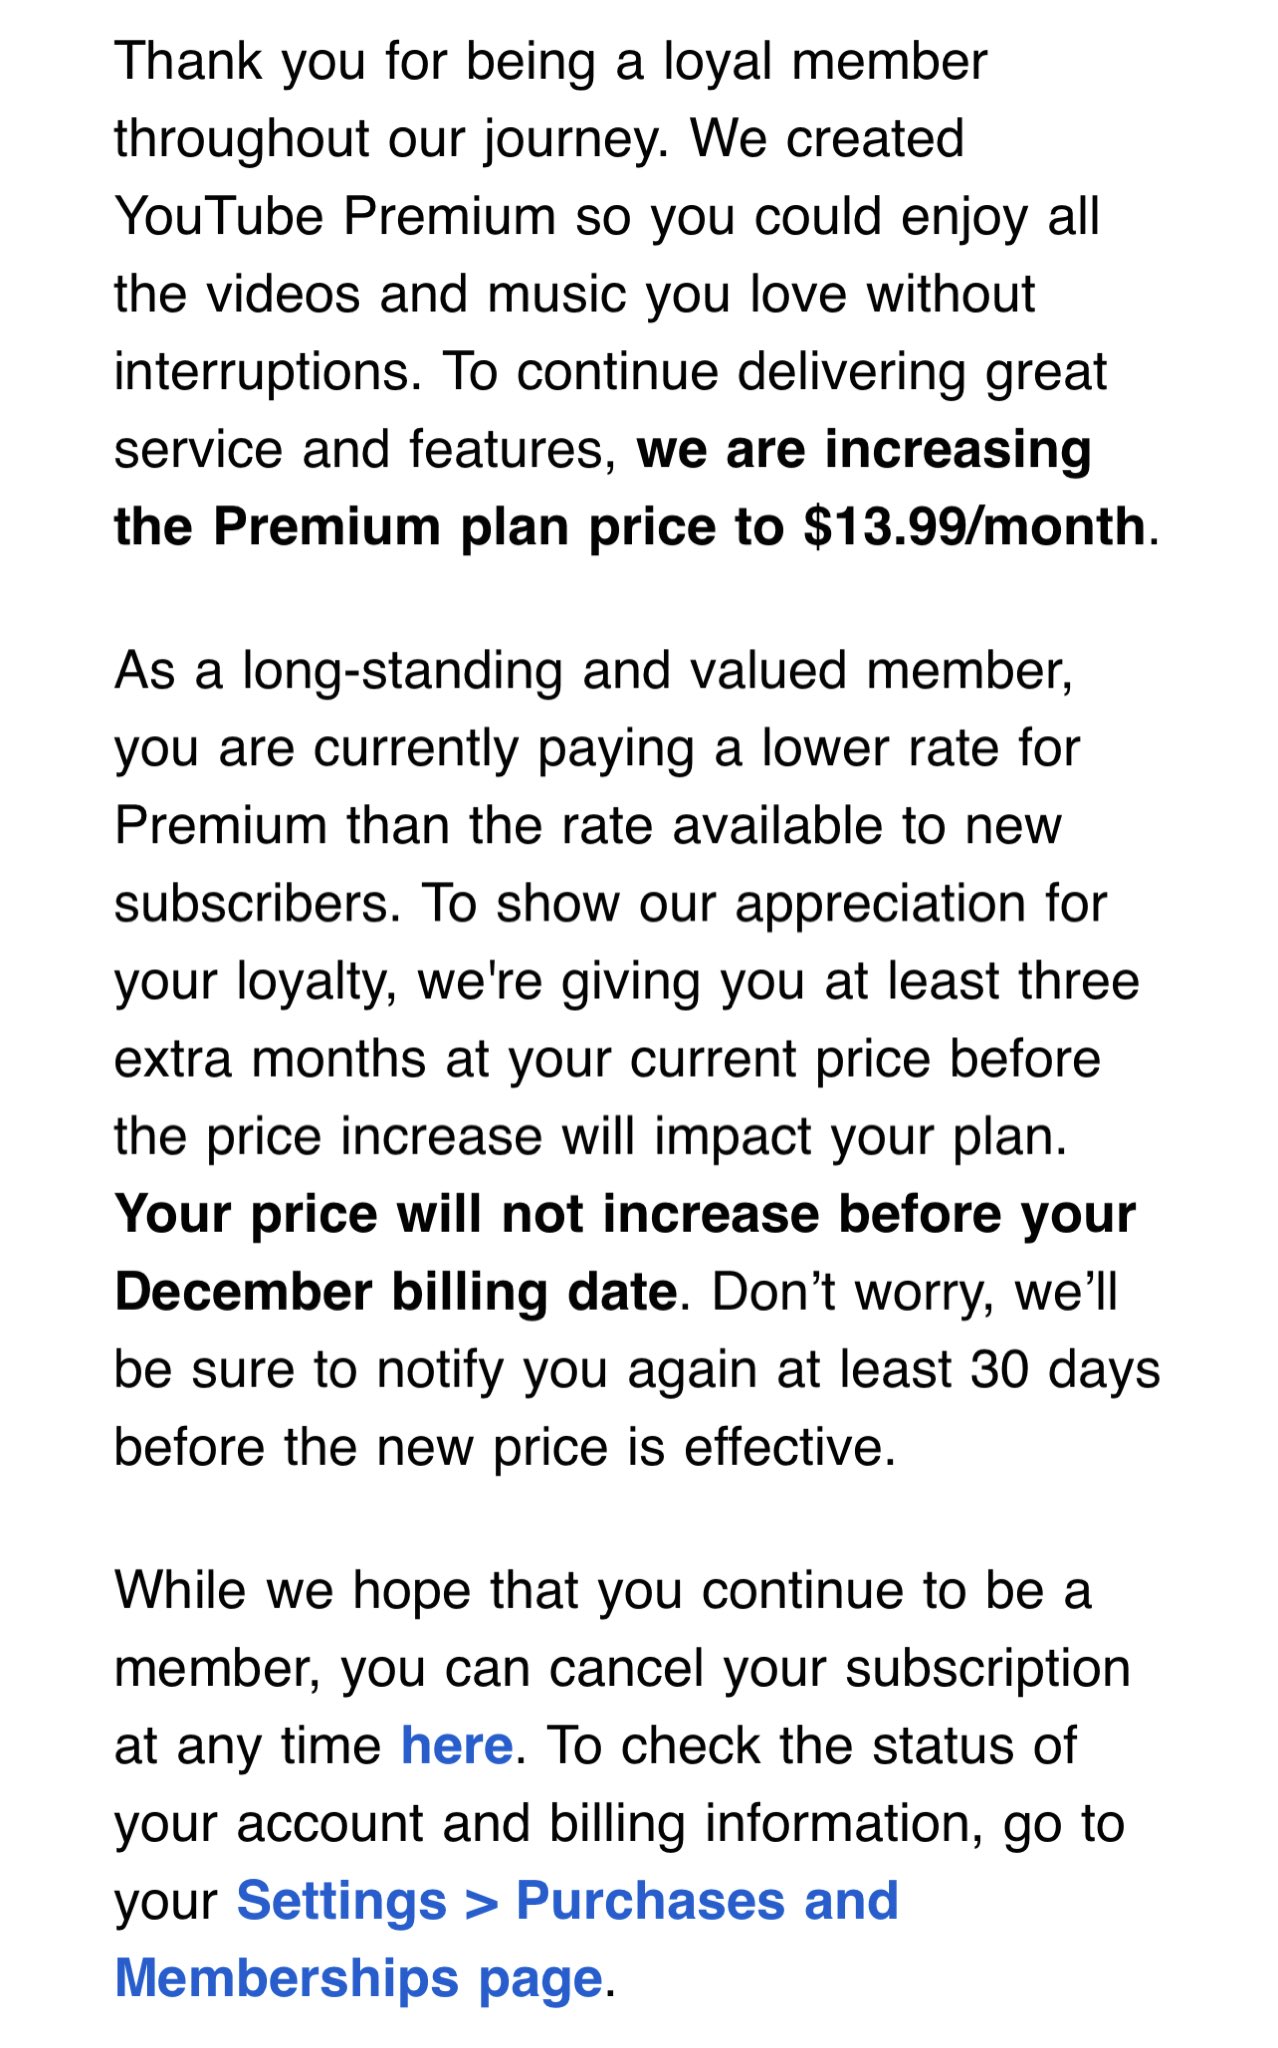 In einer E-Mail von YouTube Premium wird erklärt, dass die Preise ab Dezember 2023 auf 13,99 $ pro Monat steigen.